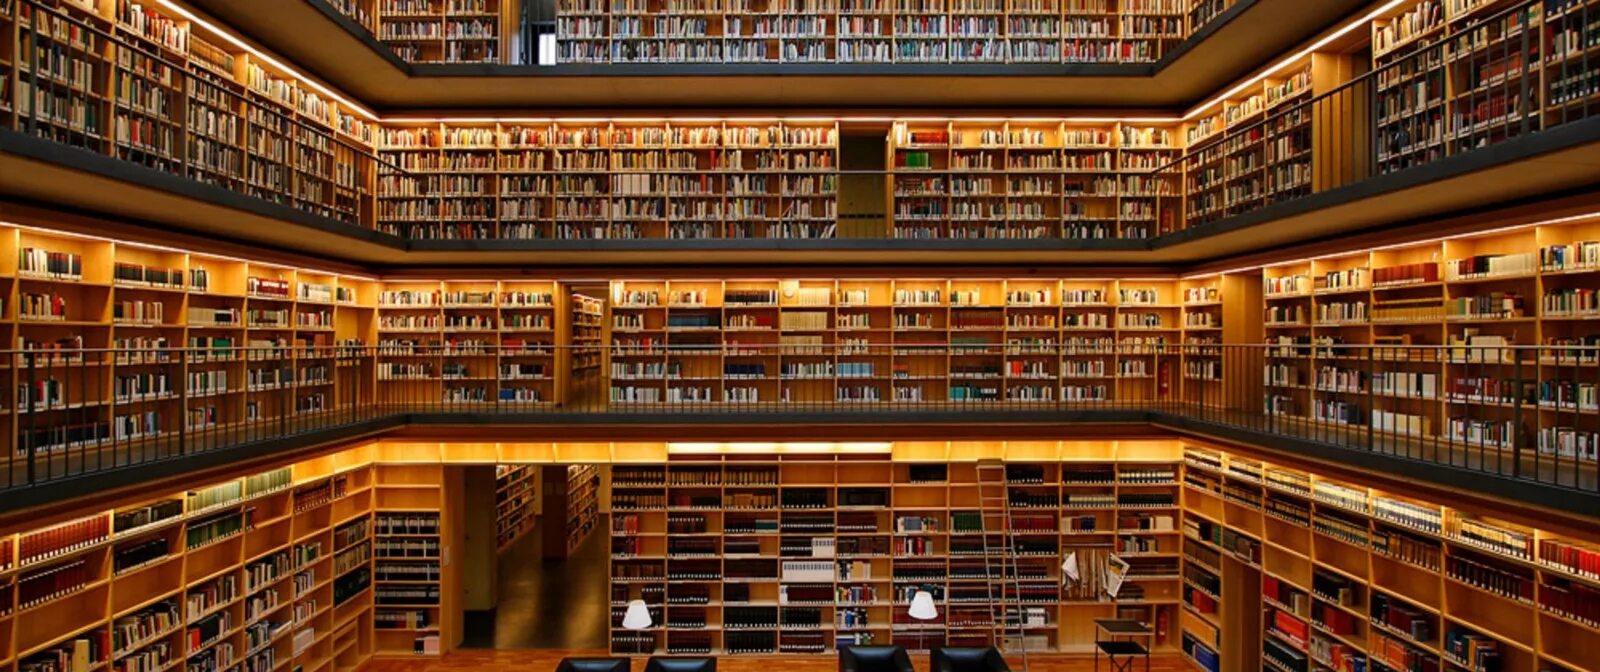 Compiled library. 19-Ярусное книгохранилище РГБ. Библиотека Phillips Exeter. Красивая библиотека. Большая библиотека.